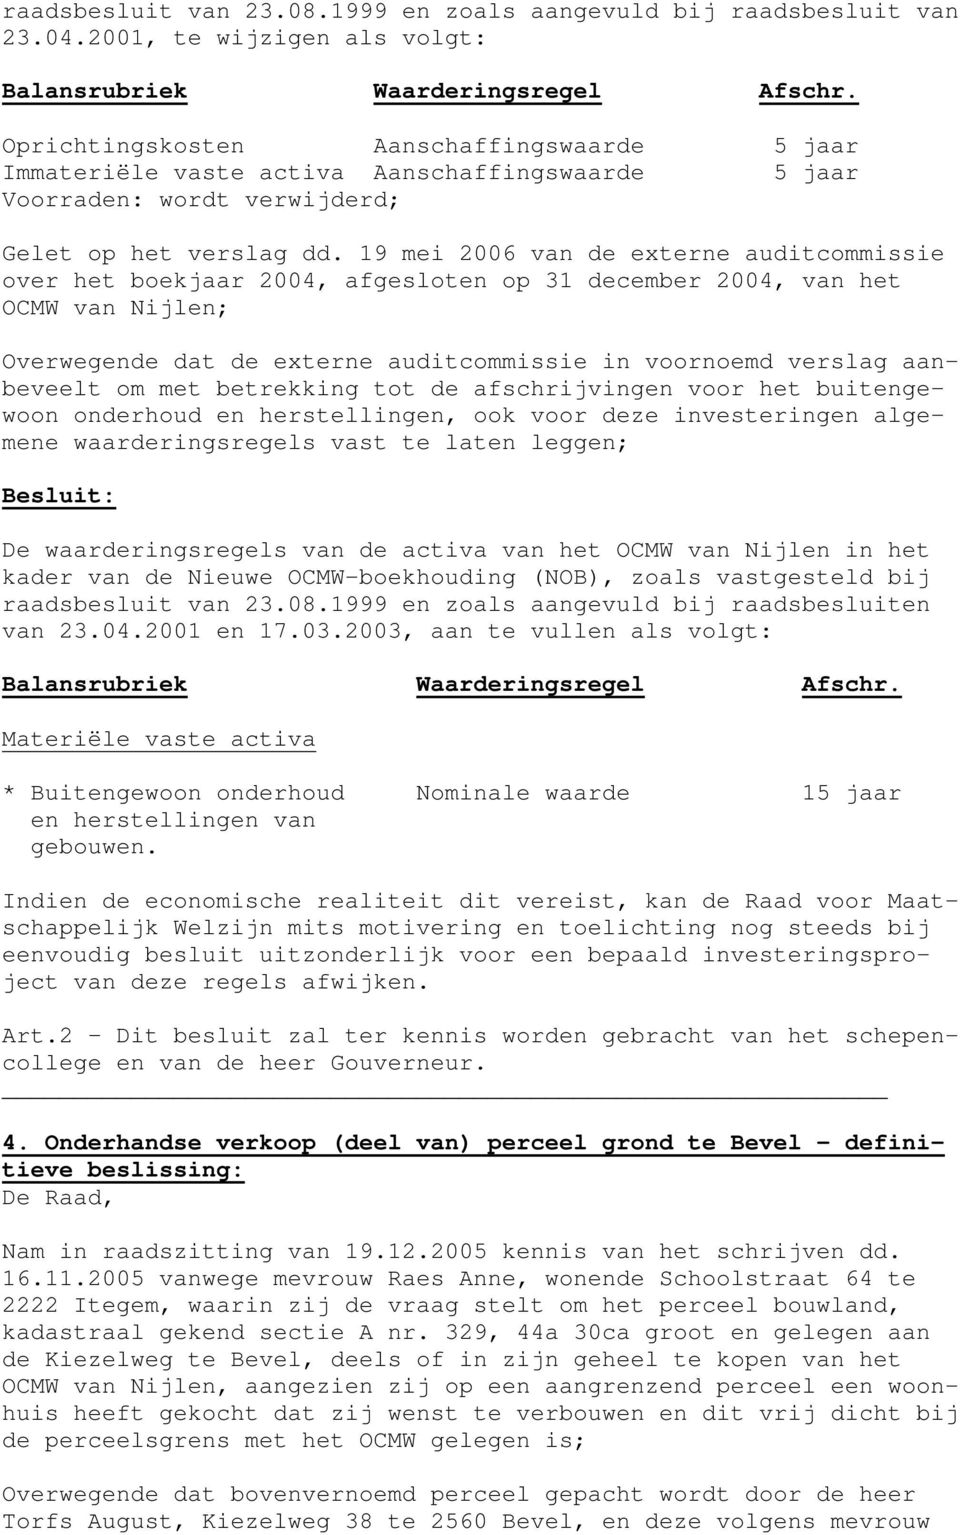 19 mei 2006 van de externe auditcommissie over het boekjaar 2004, afgesloten op 31 december 2004, van het OCMW van Nijlen; Overwegende dat de externe auditcommissie in voornoemd verslag aanbeveelt om